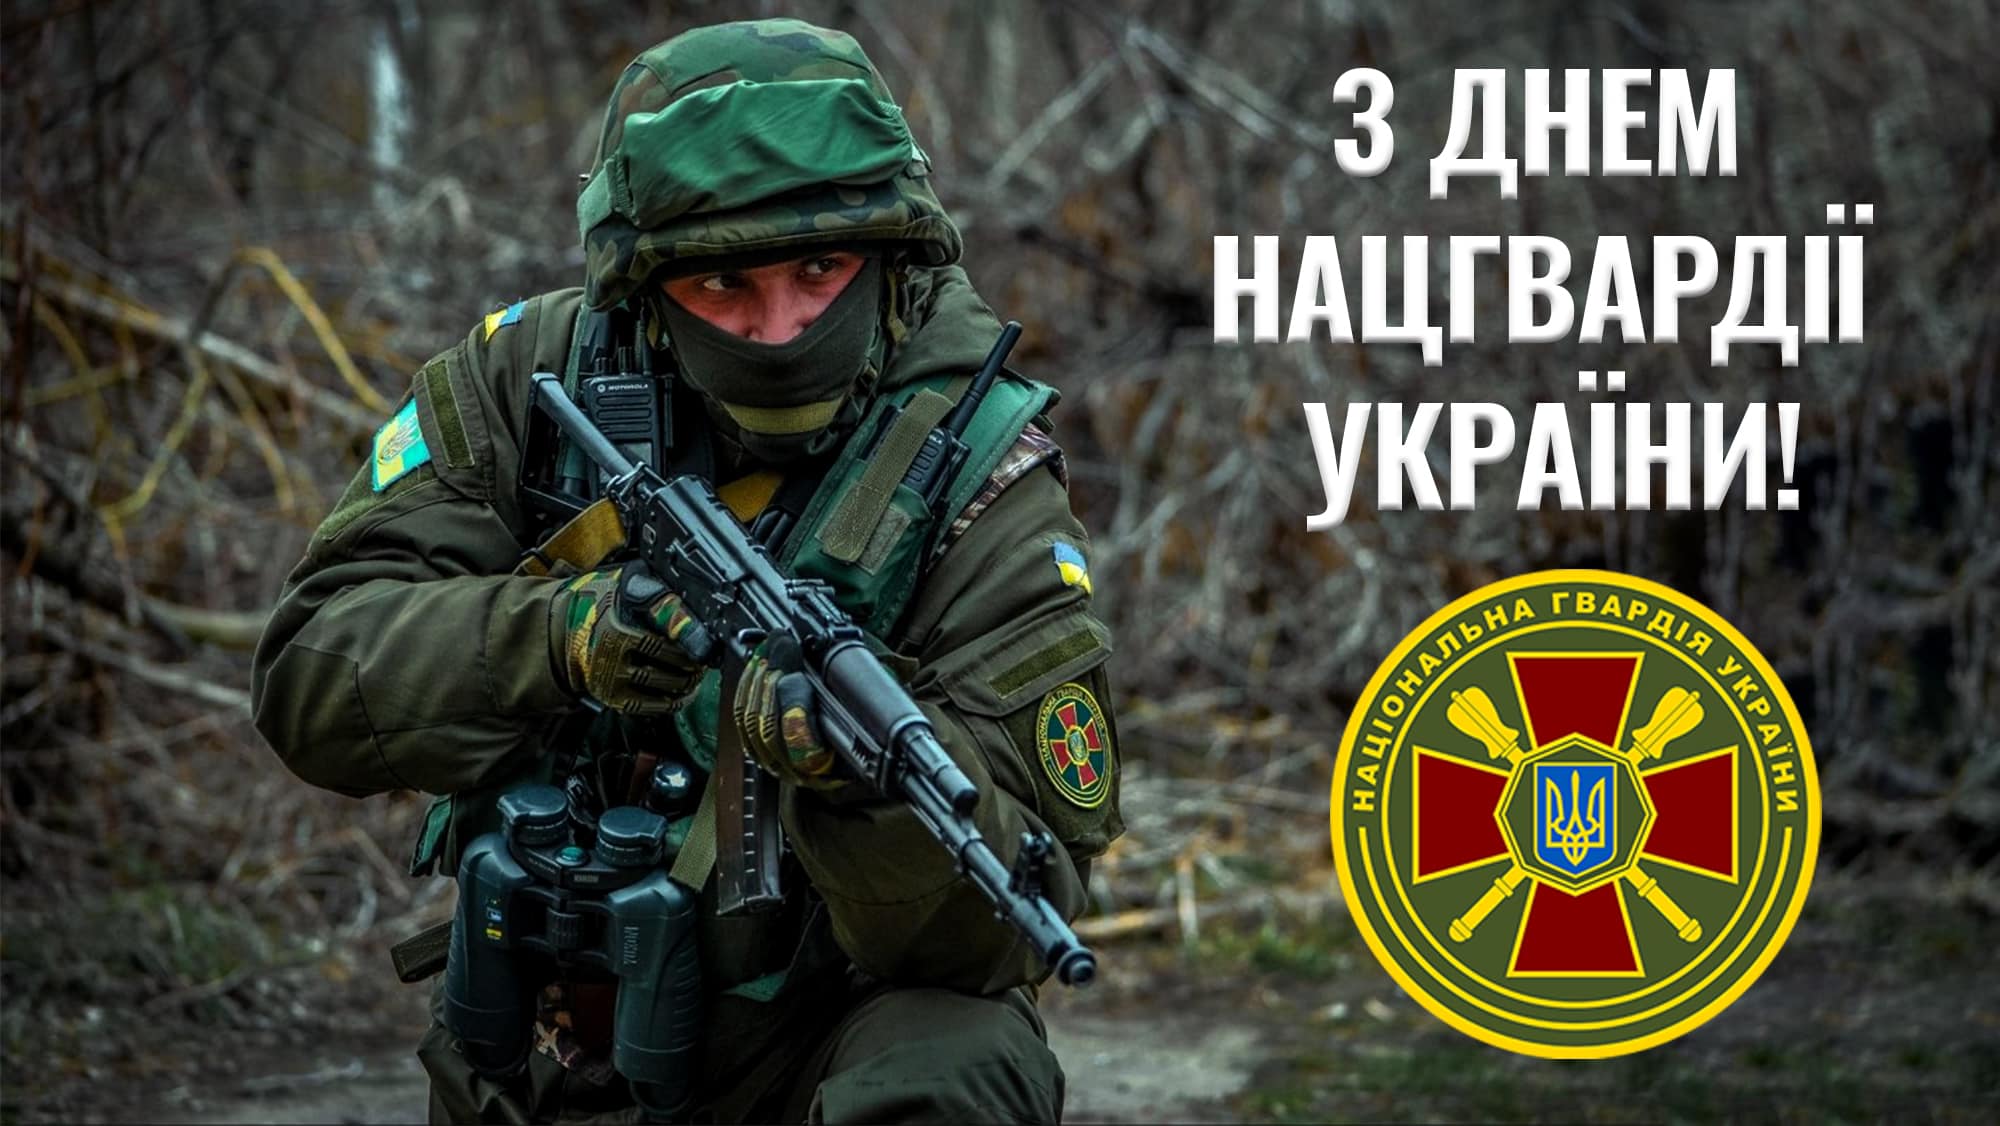 Сьогодні, 26 березня – День Національної гвардії України